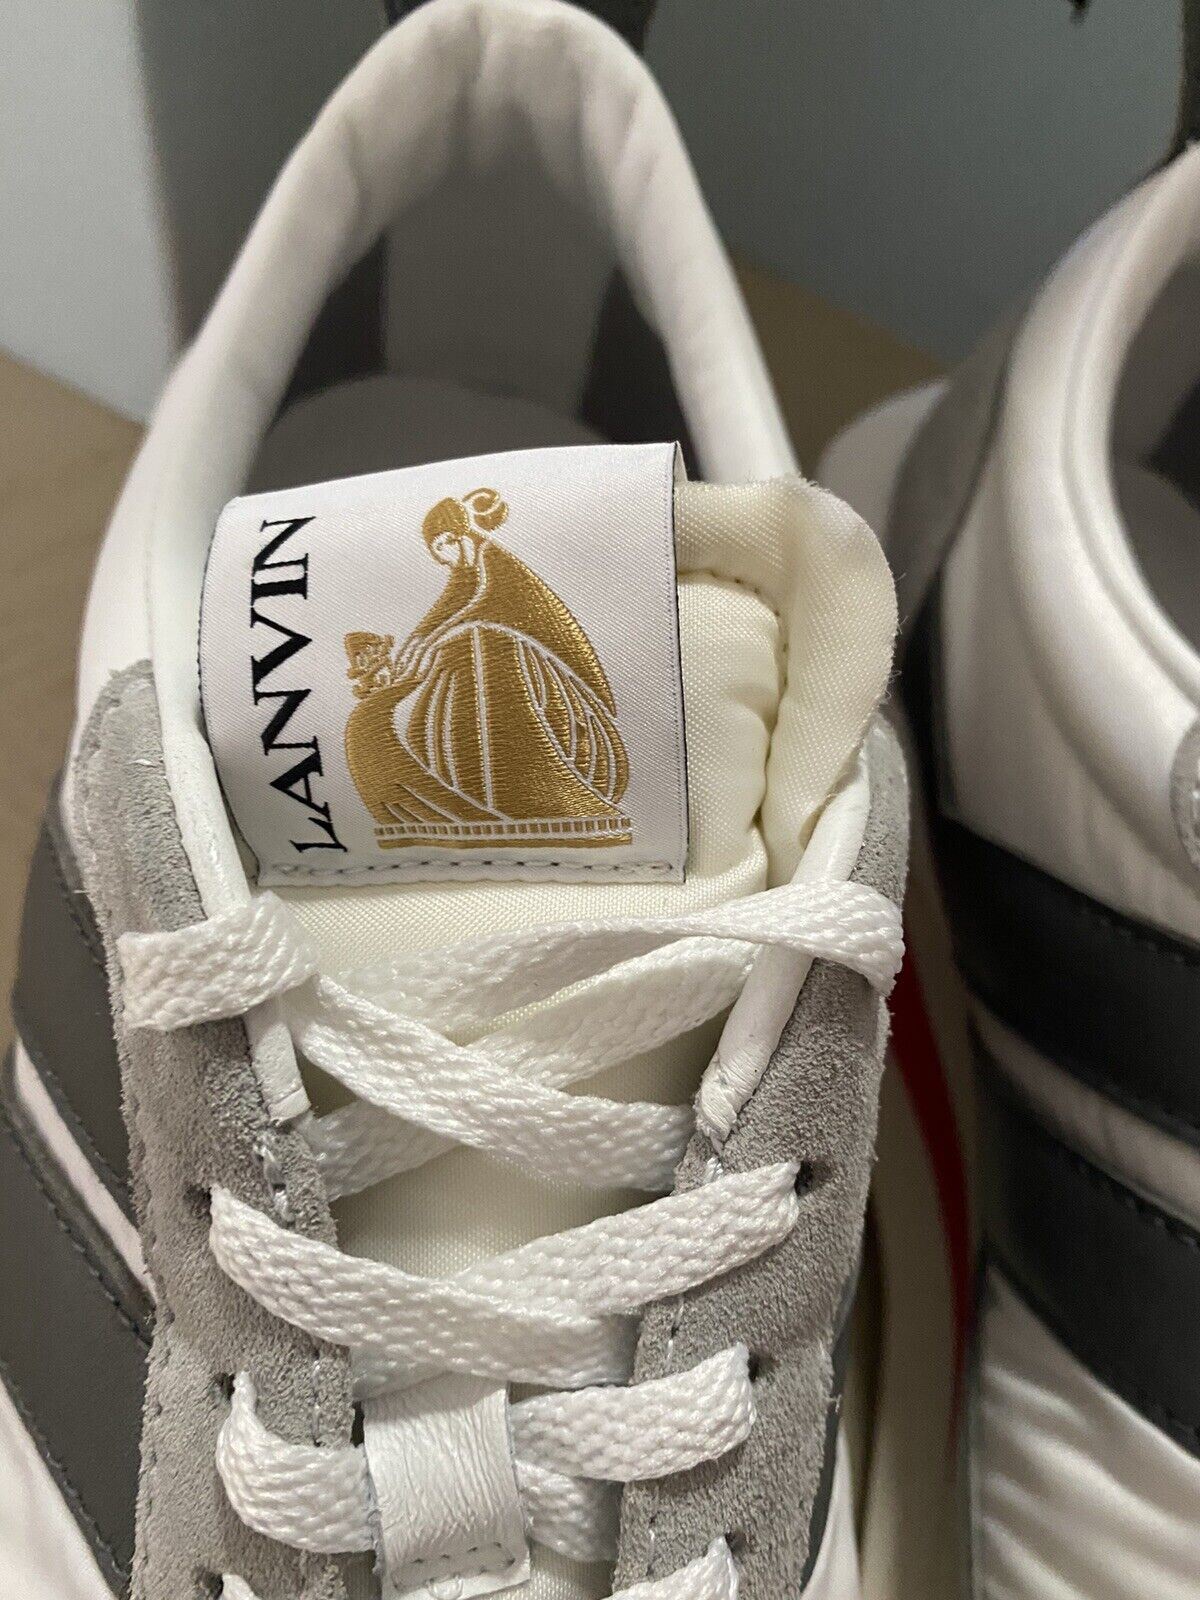 Новые мужские кроссовки Lanvin из нейлона/замши BumpR белого/серого цвета 13 US/46 EU